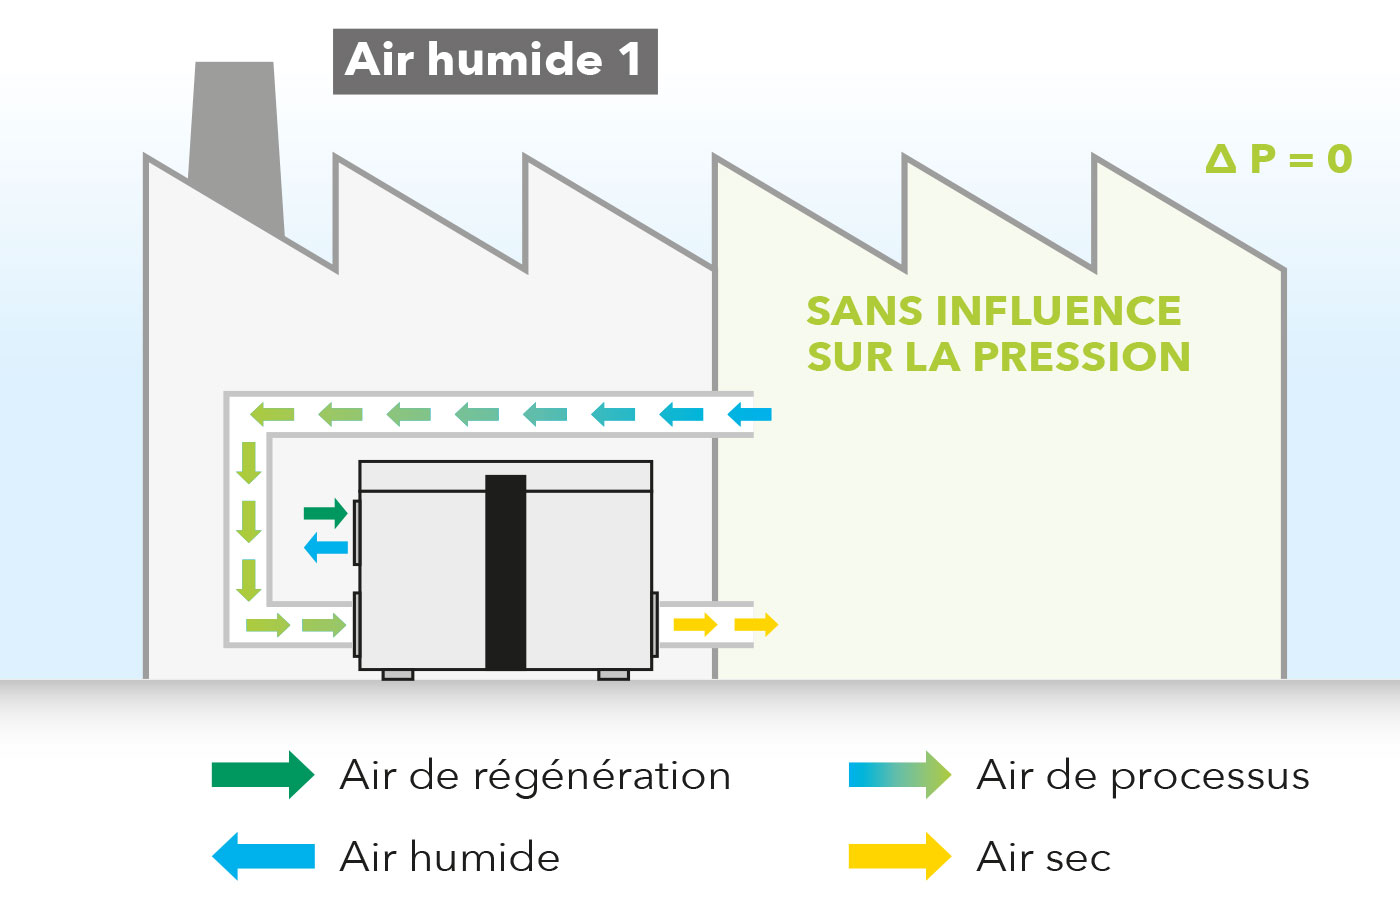 Mode recyclage de l’air sans influence sur la pression avec installation extérieure